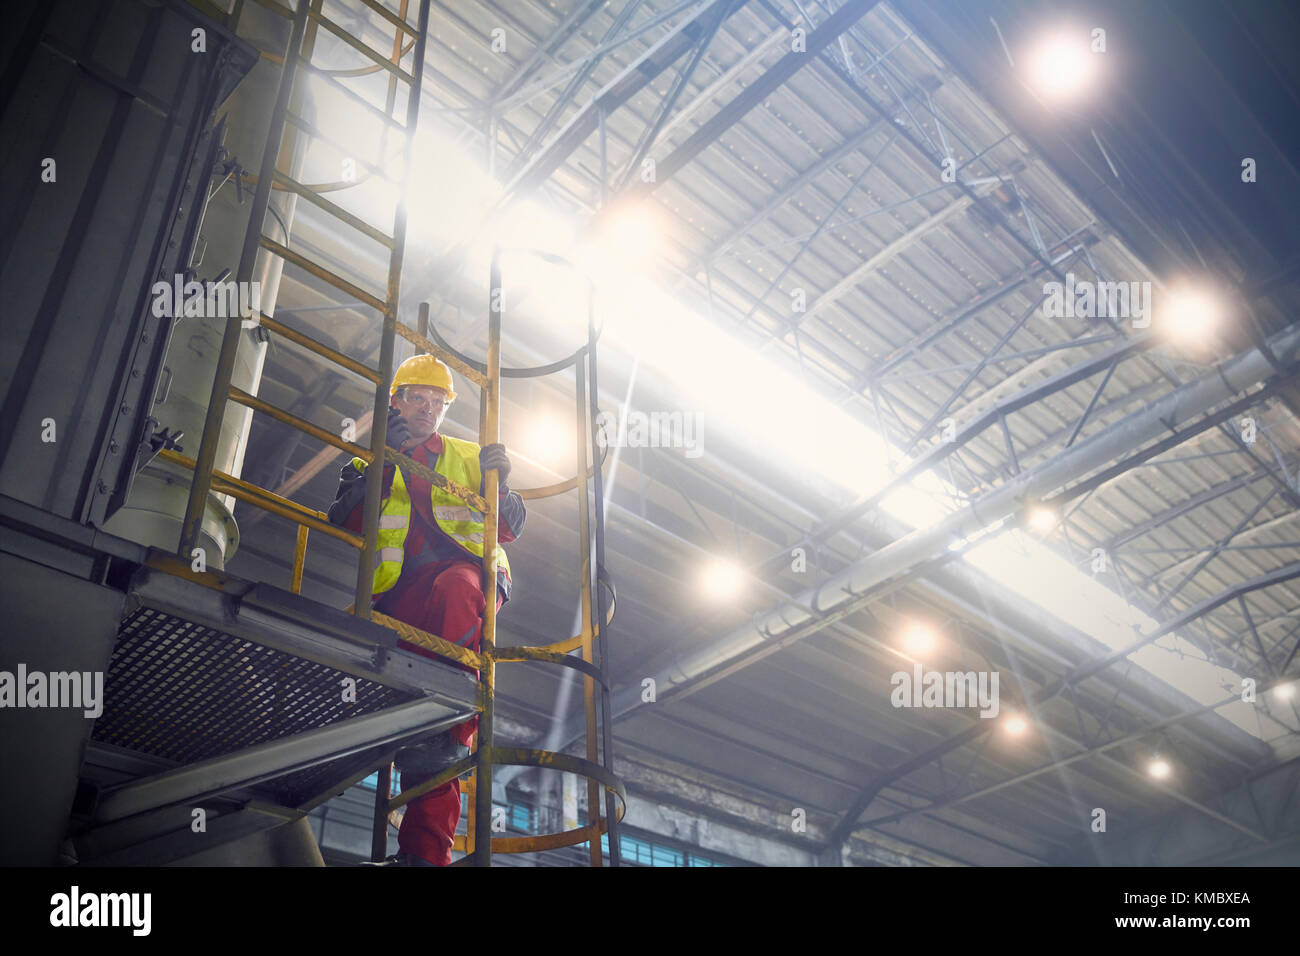 Steelworker on platform in steel mill Stock Photo